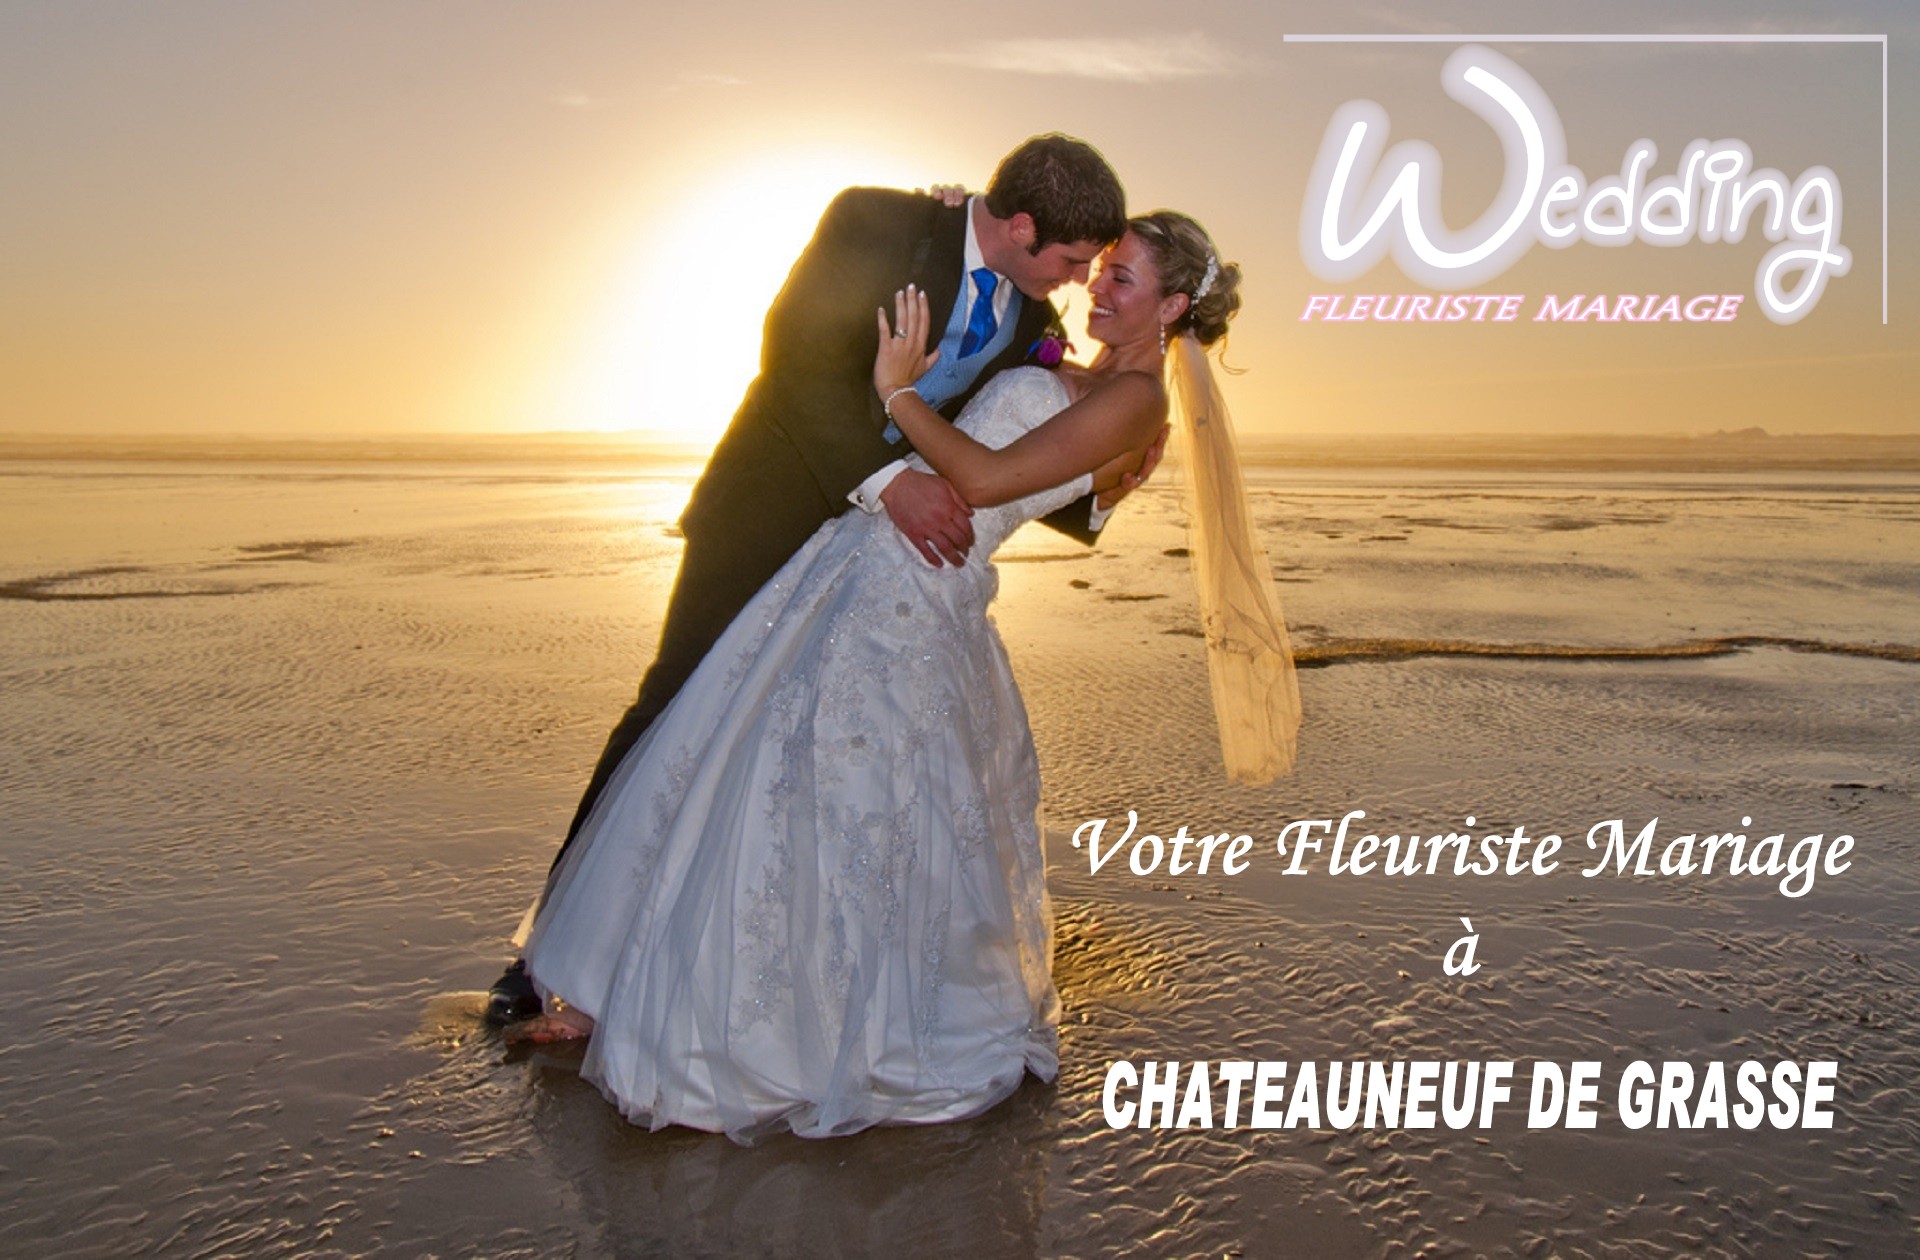 FLEURISTE MARIAGE CHATEAUNEUF DE GRASSE - WEDDING PLANNER CHATEAUNEUF DE GRASSE - TRAITEUR CHATEAUNEUF DE GRASSE